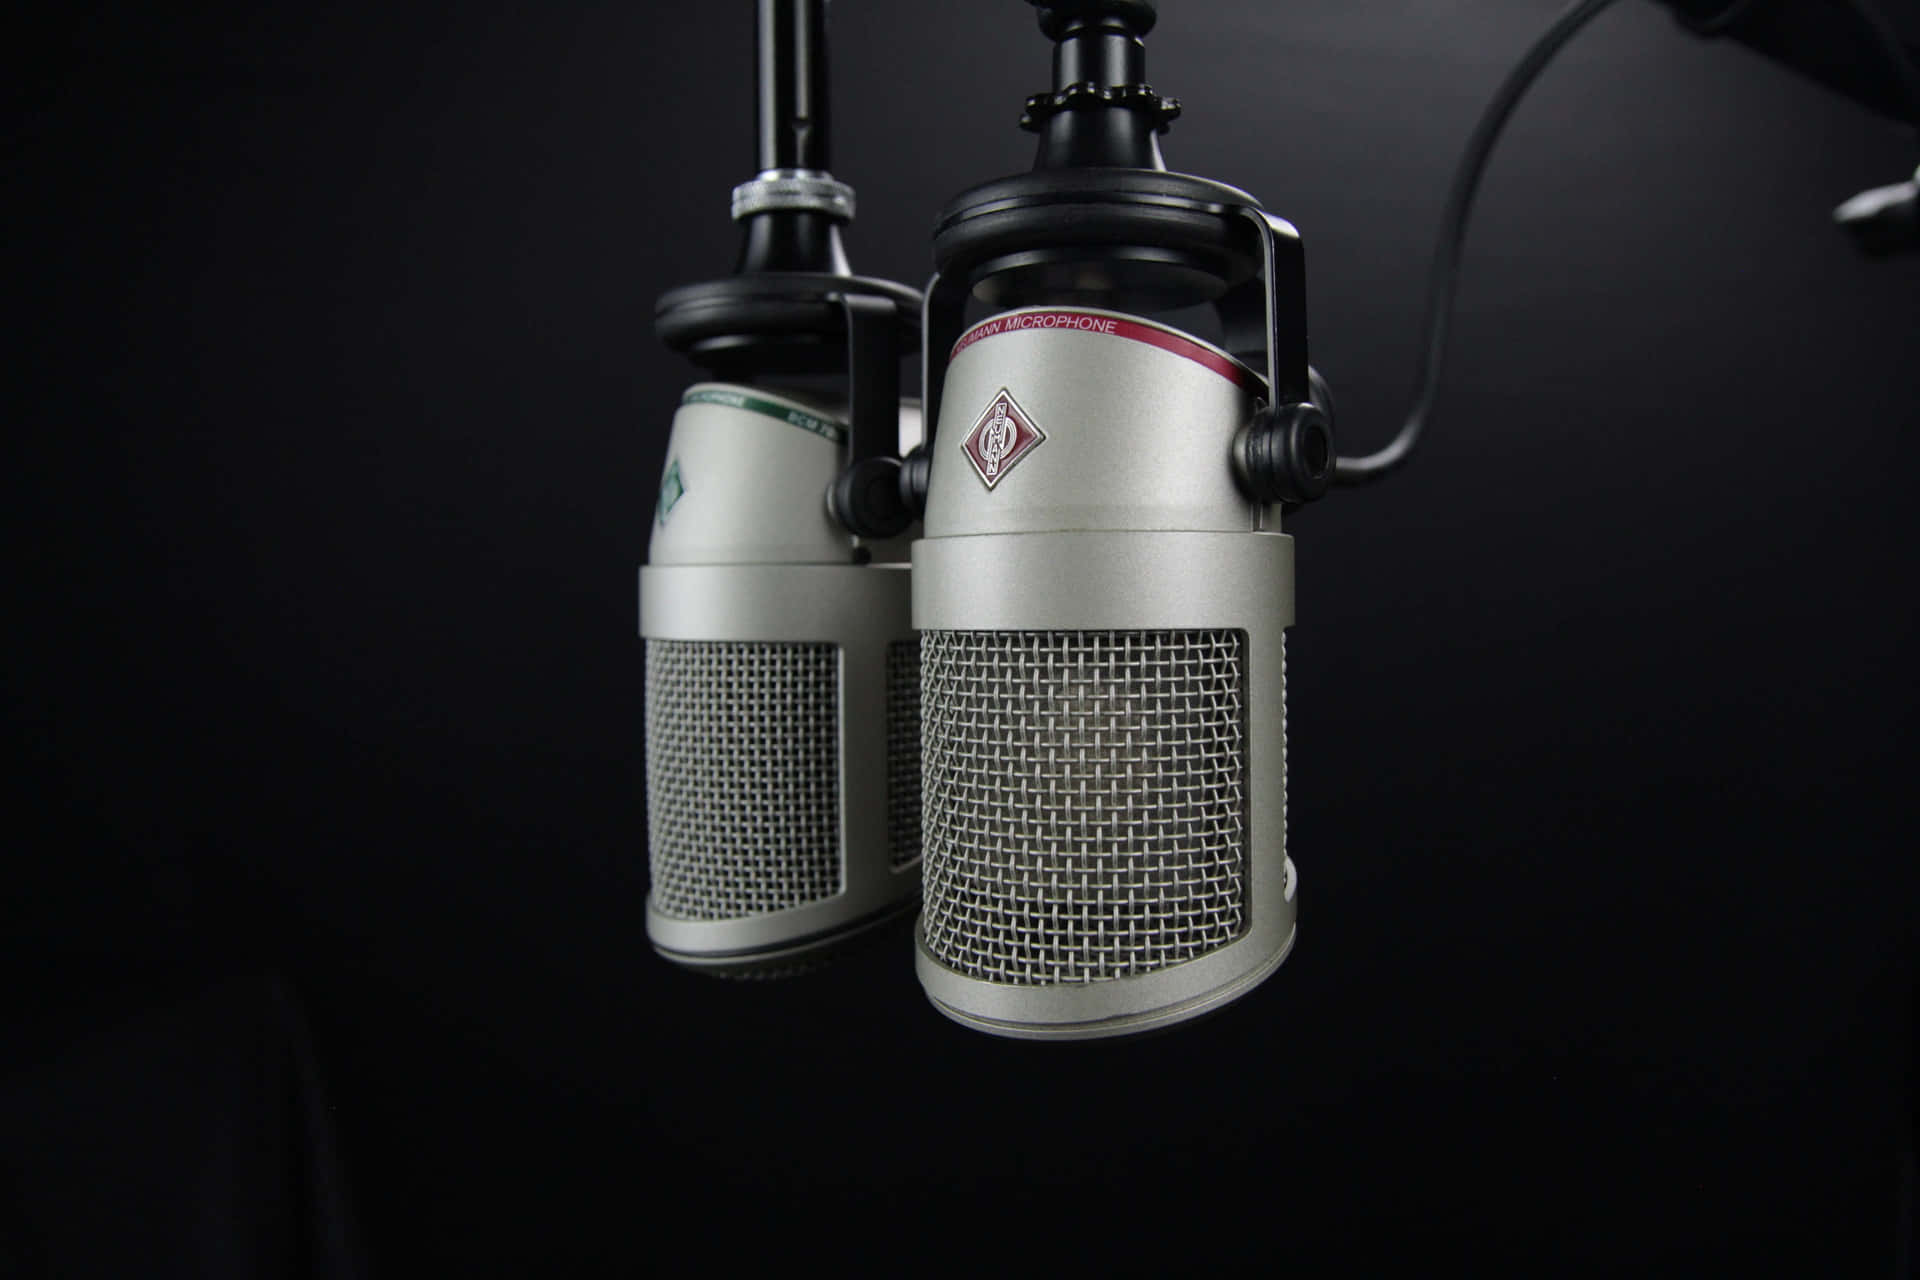 Microfoniper Registrazioni Audio Per Podcast Sfondo.